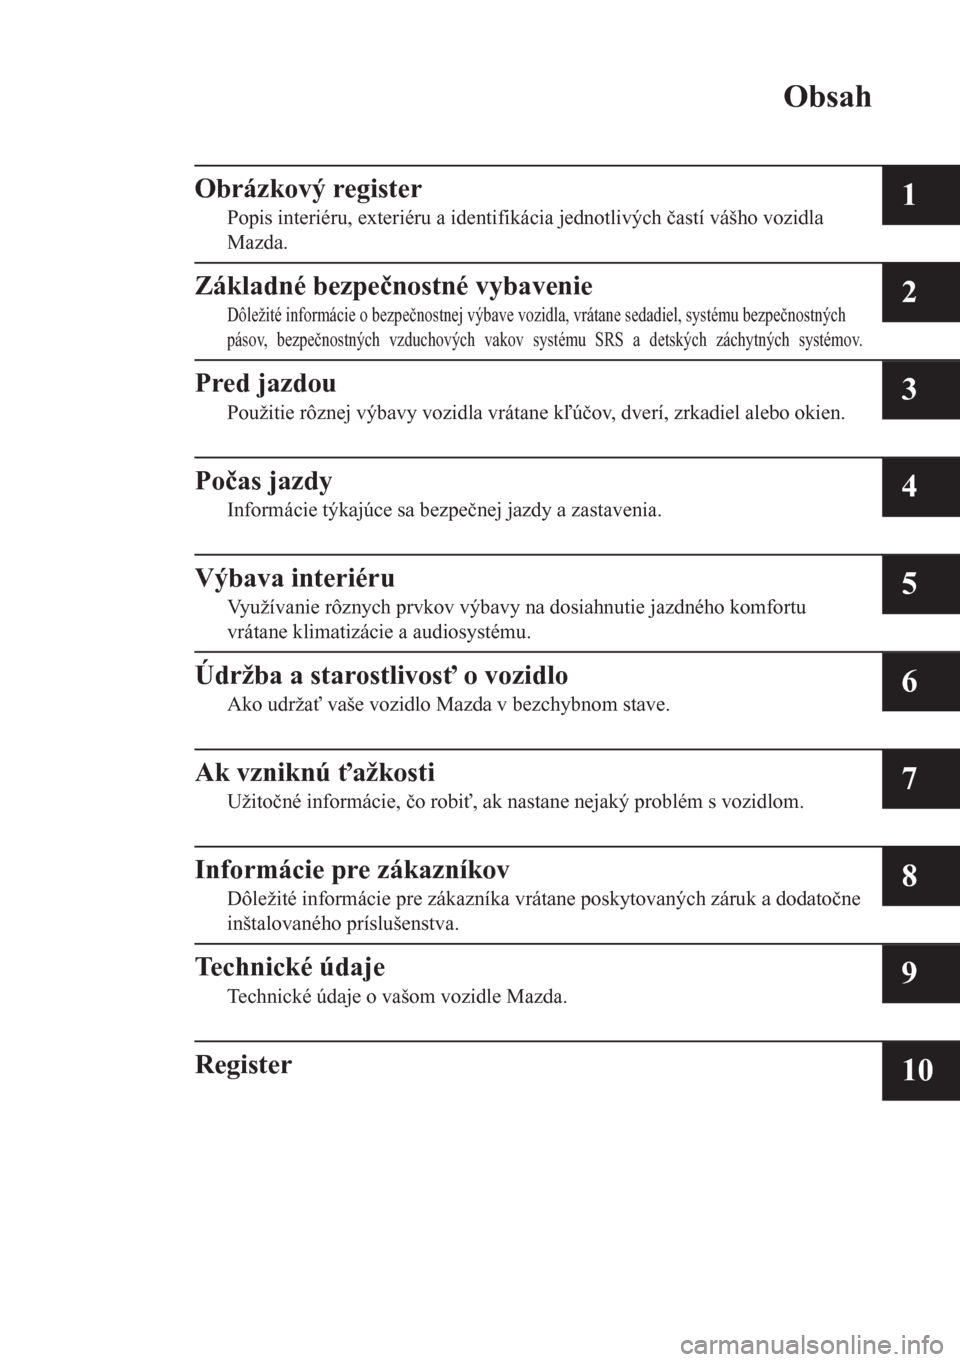 MAZDA MODEL CX-5 2018  Užívateľská príručka (in Slovak) Obsah
Obrázkový register
Popis interiéru, exteriéru a identifikácia jednotlivých �þastí vášho vozidla
Mazda.1
Základné bezpe�þnostné vybavenie
Dôležité informácie o bezpe�þnostnej v